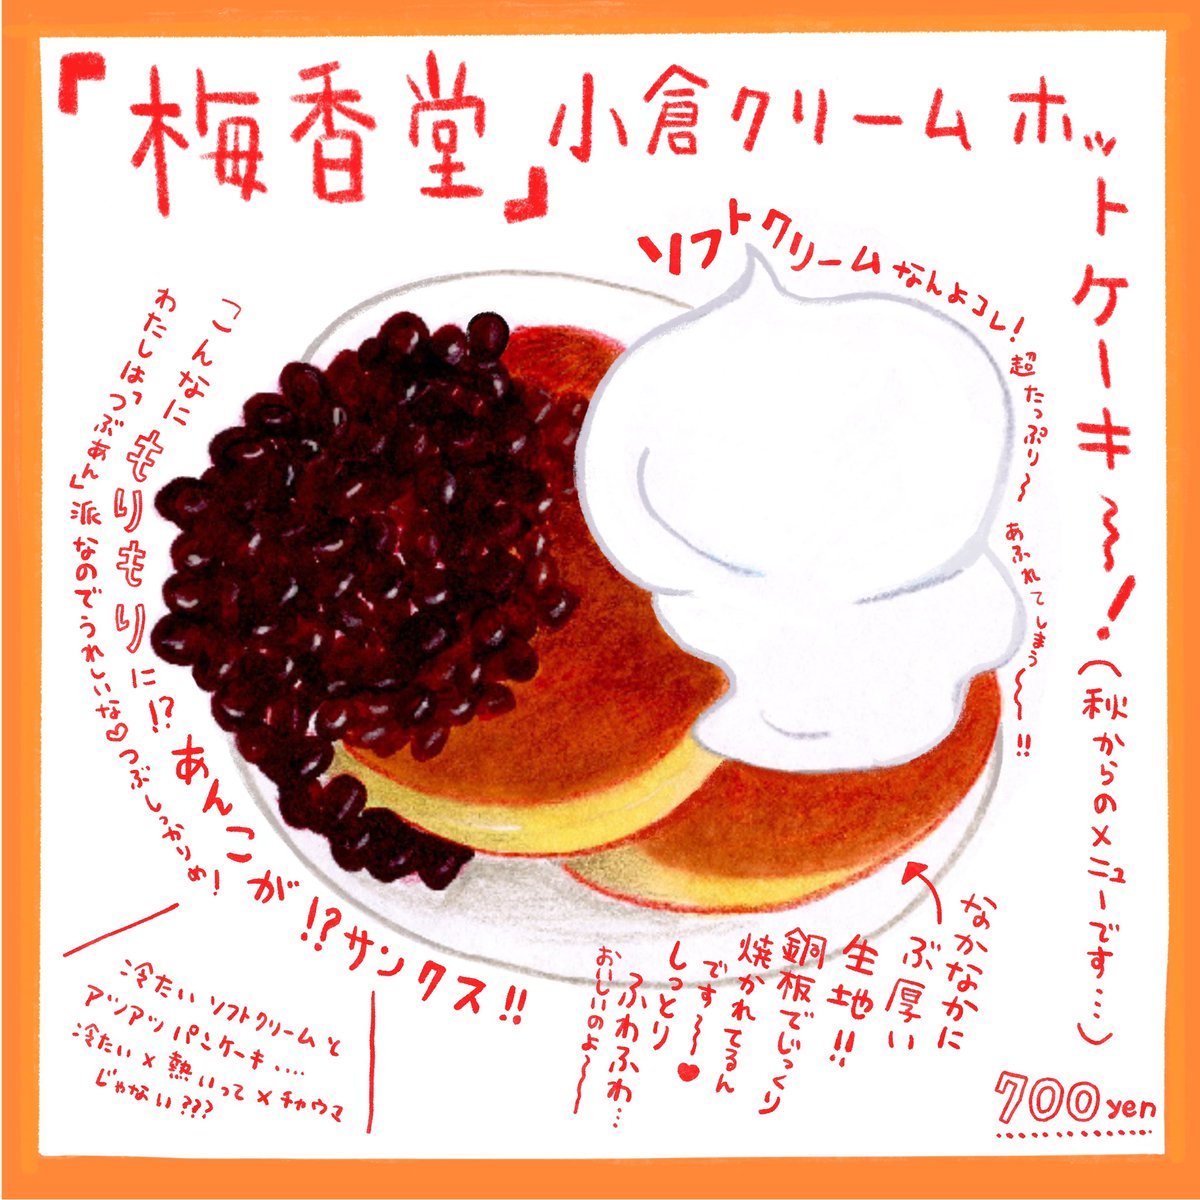 ホットケーキ食べたい!!
今はホットケーキじゃなくてかき氷になってるかもだけど。

#京都グルメ
#おやつ
#イラストエッセイ
#梅香堂 